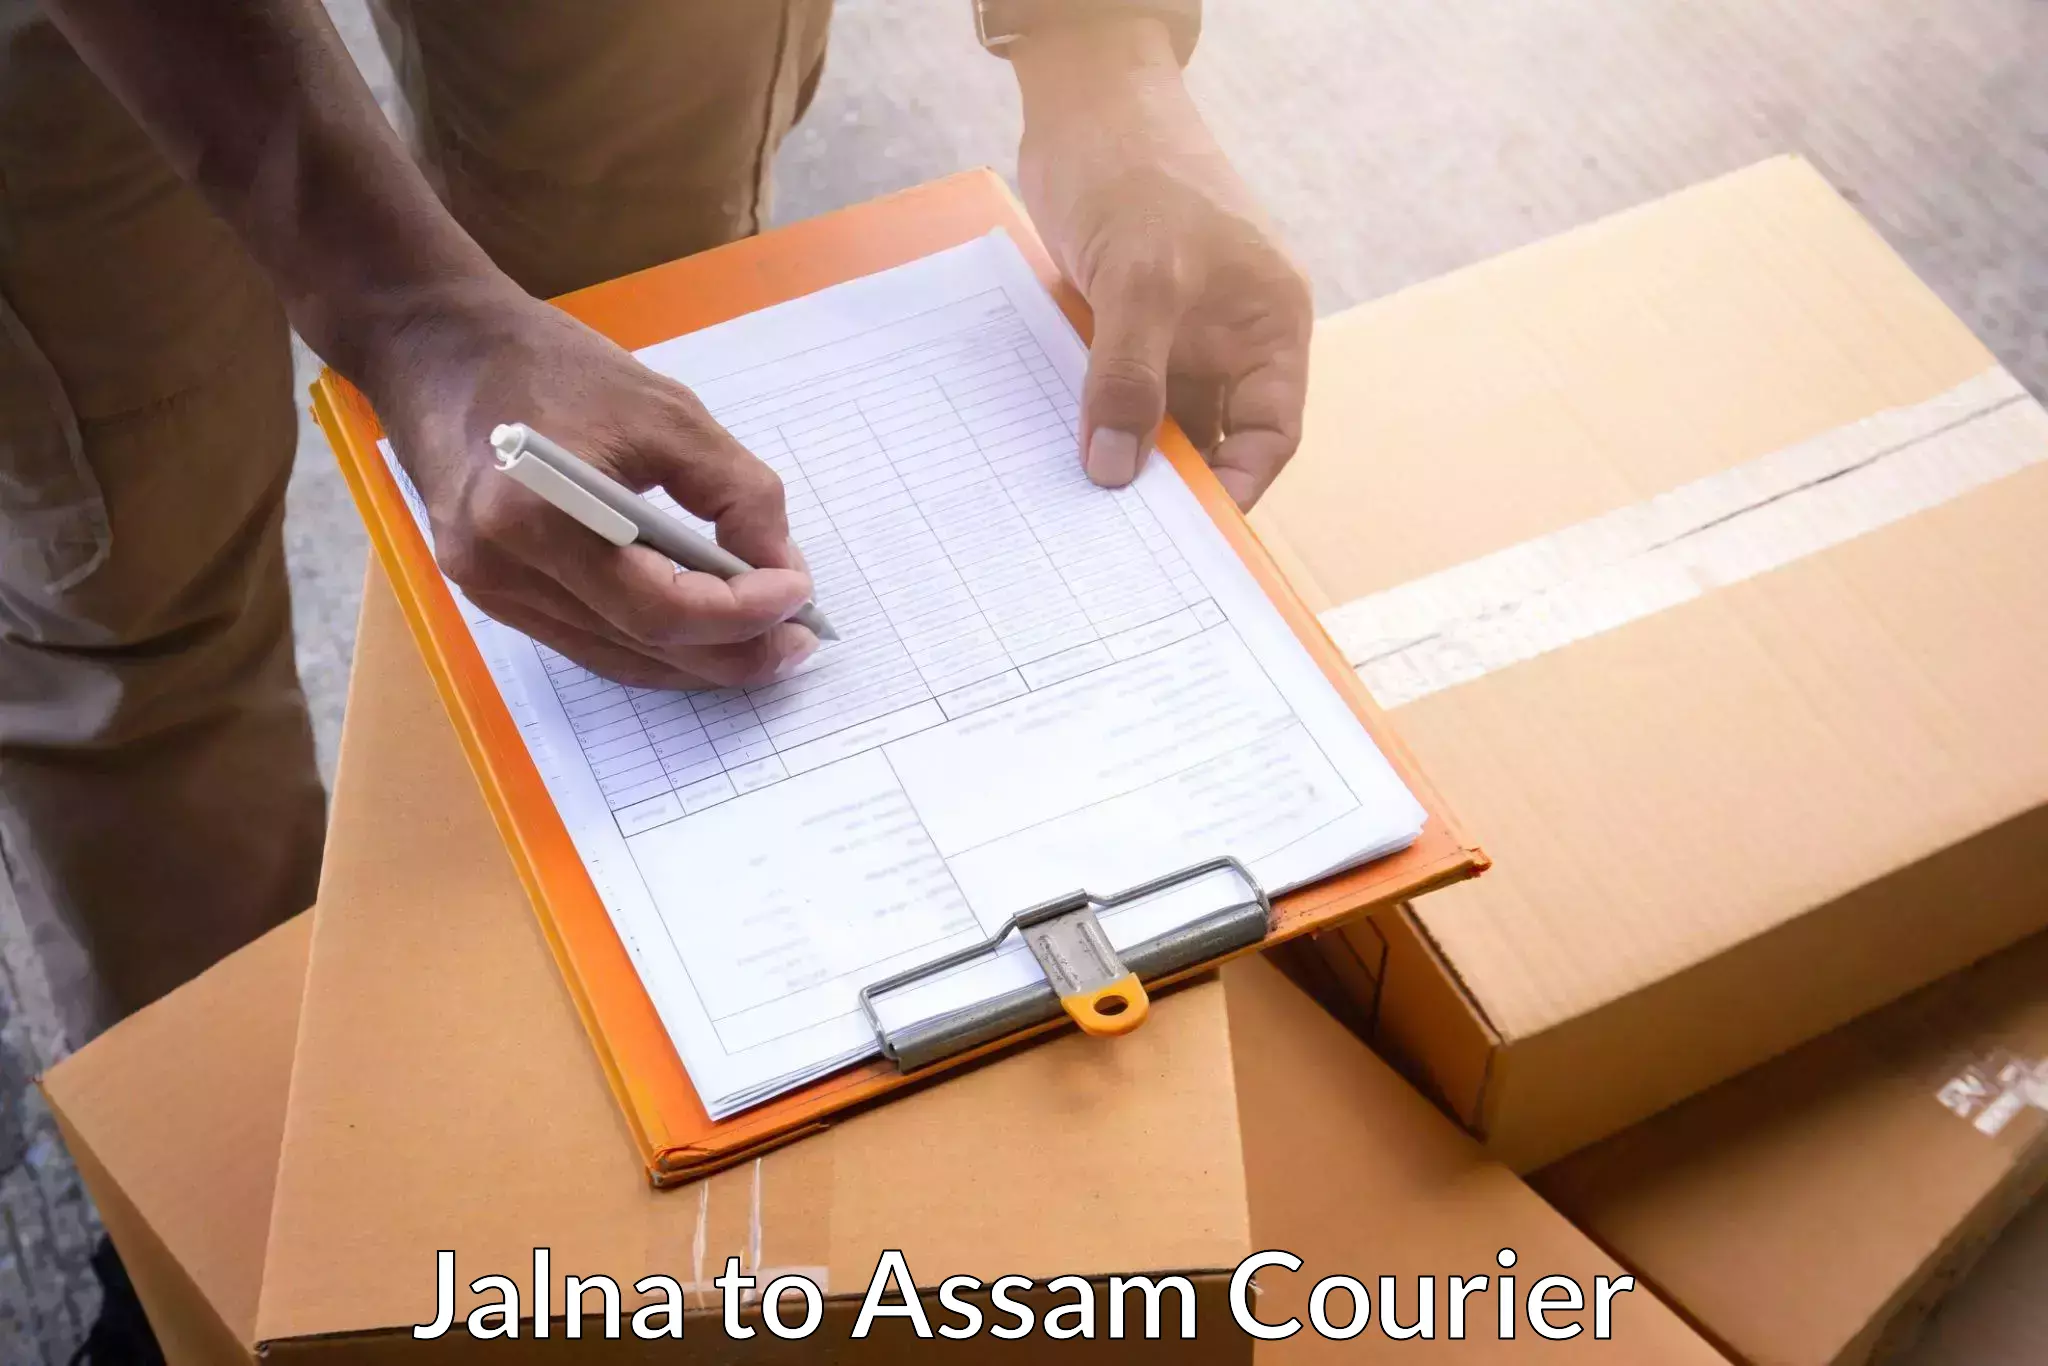 Logistics service provider Jalna to Tinsukia